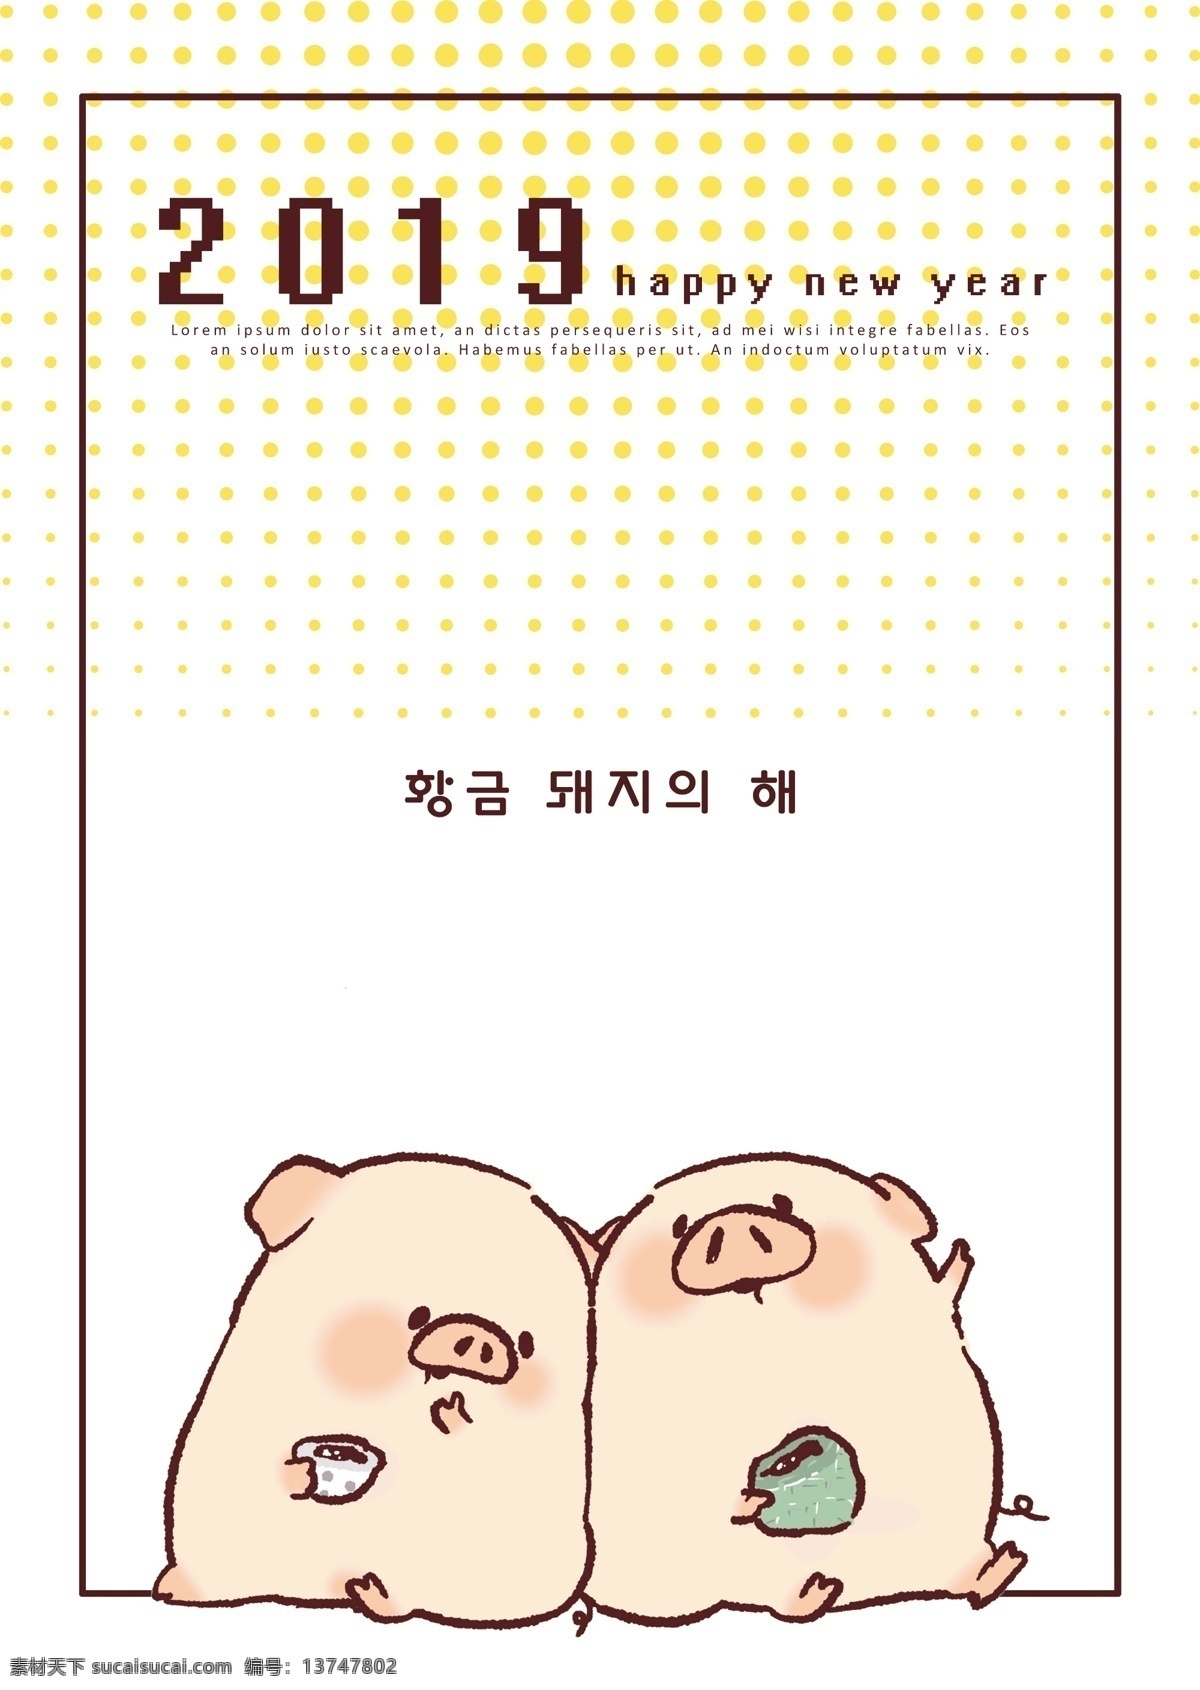 可爱 2019 年 新年 海报 灰 小猪 活泼 快乐 小广场 两只小猪 淡黄色